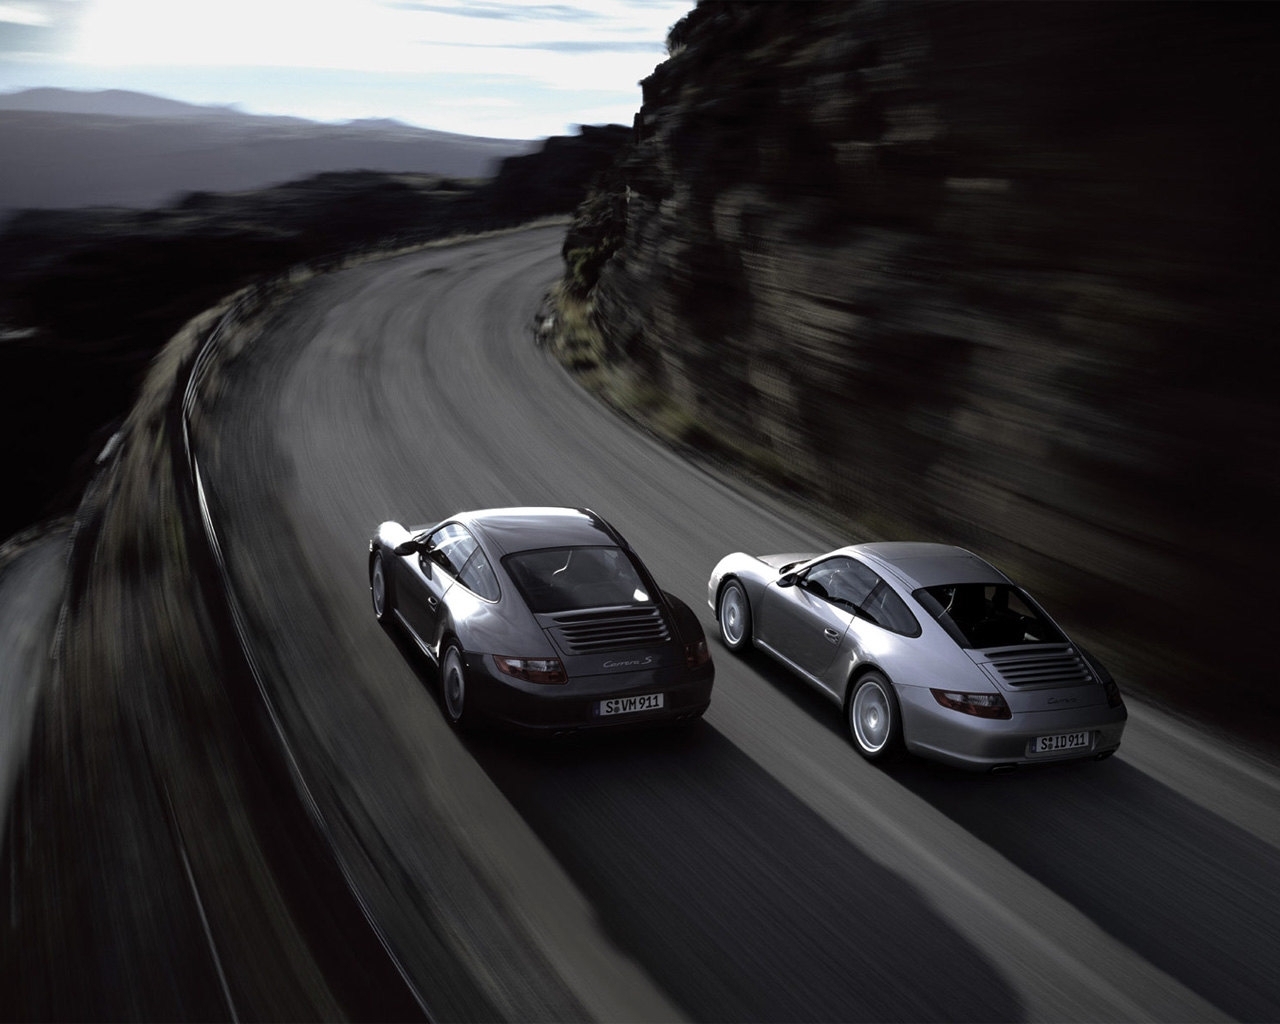 Download mobile wallpaper Roads, Auto, Porsche for free.